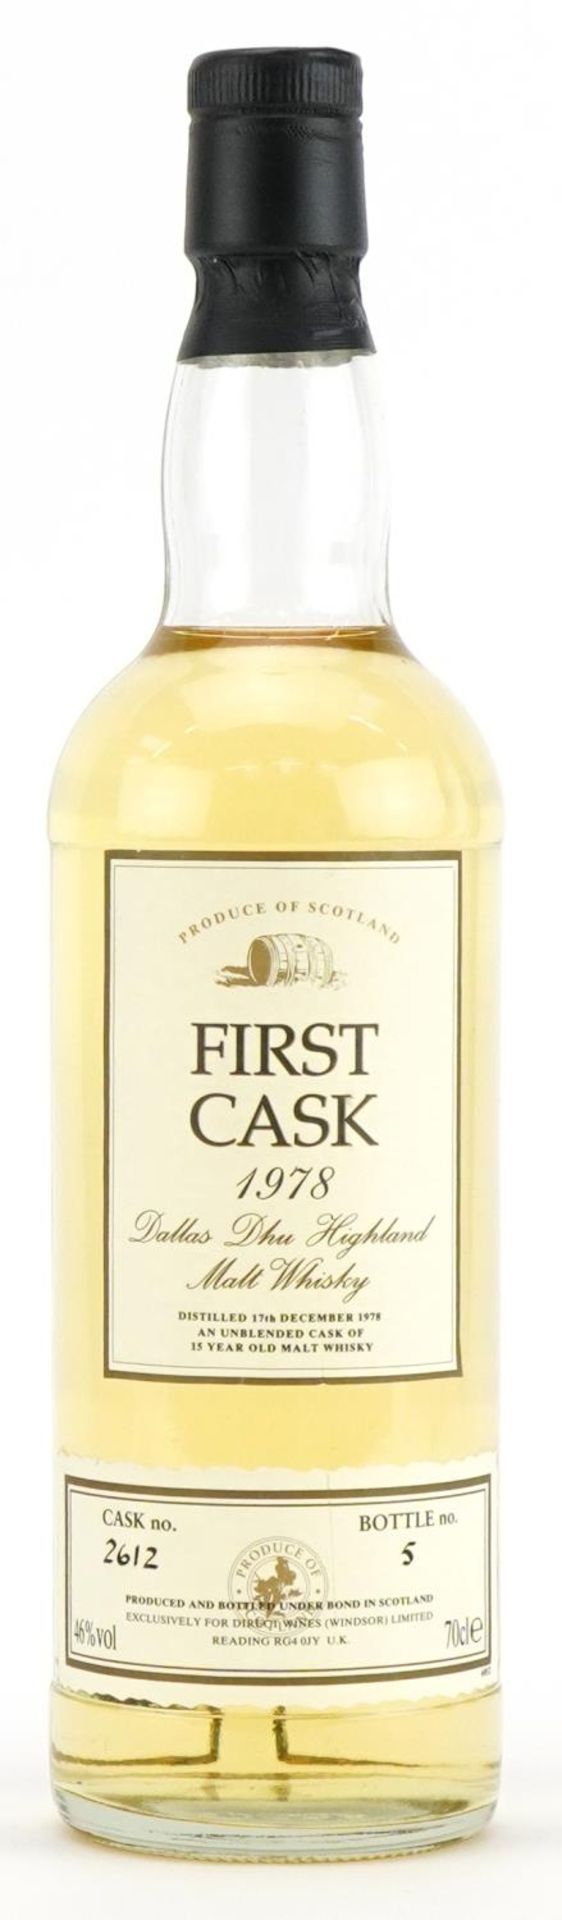 Bottle of First Cask 1978 Dallas Dhu Highland 15 Year Old Malt whisky, cask number 2612, bottle